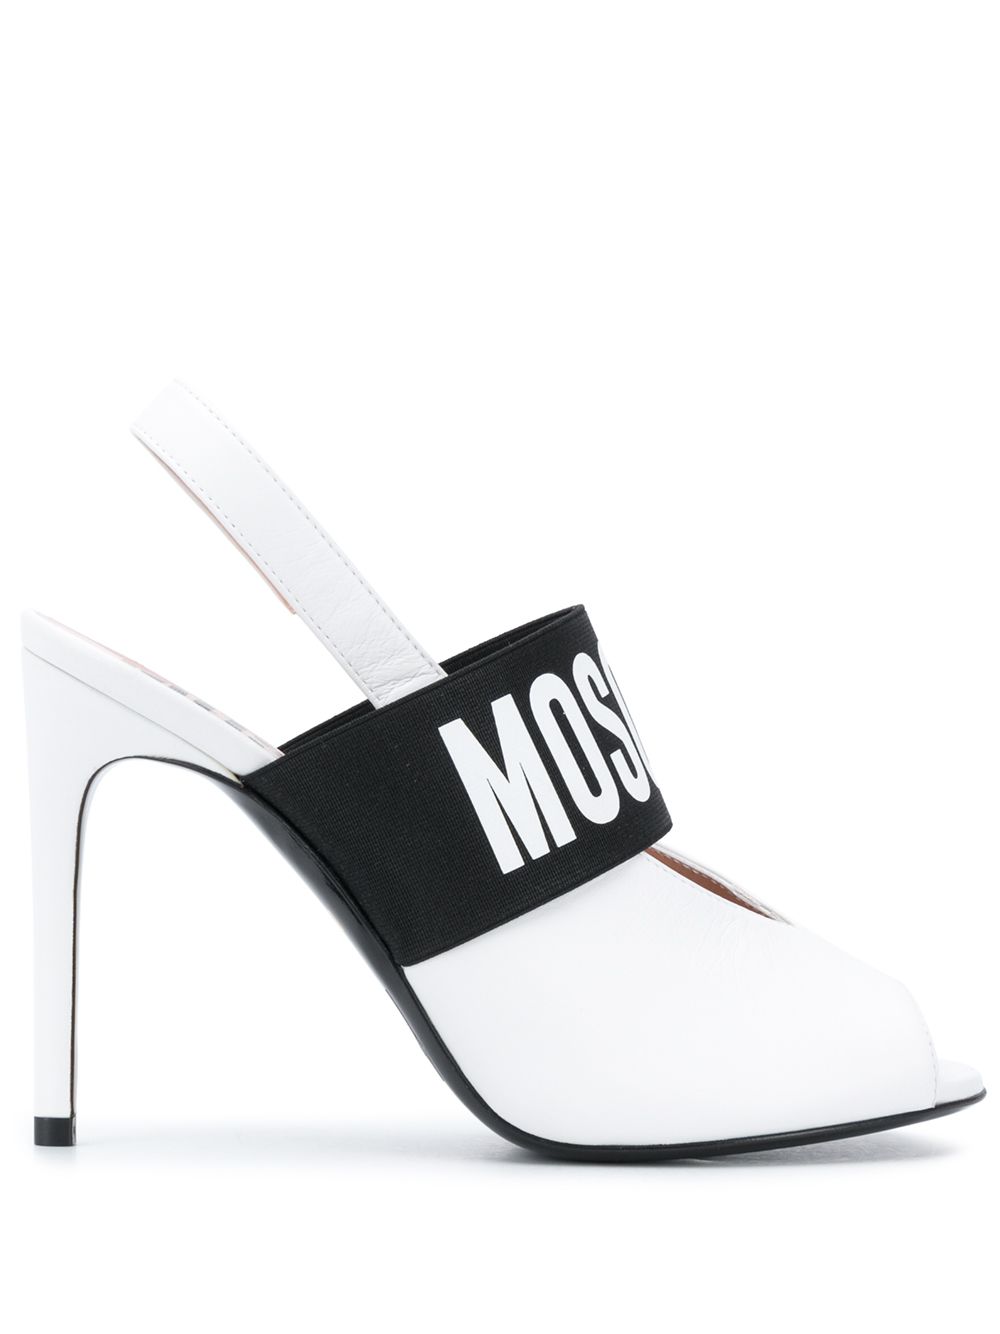 фото Moschino туфли с ремешком и логотипом